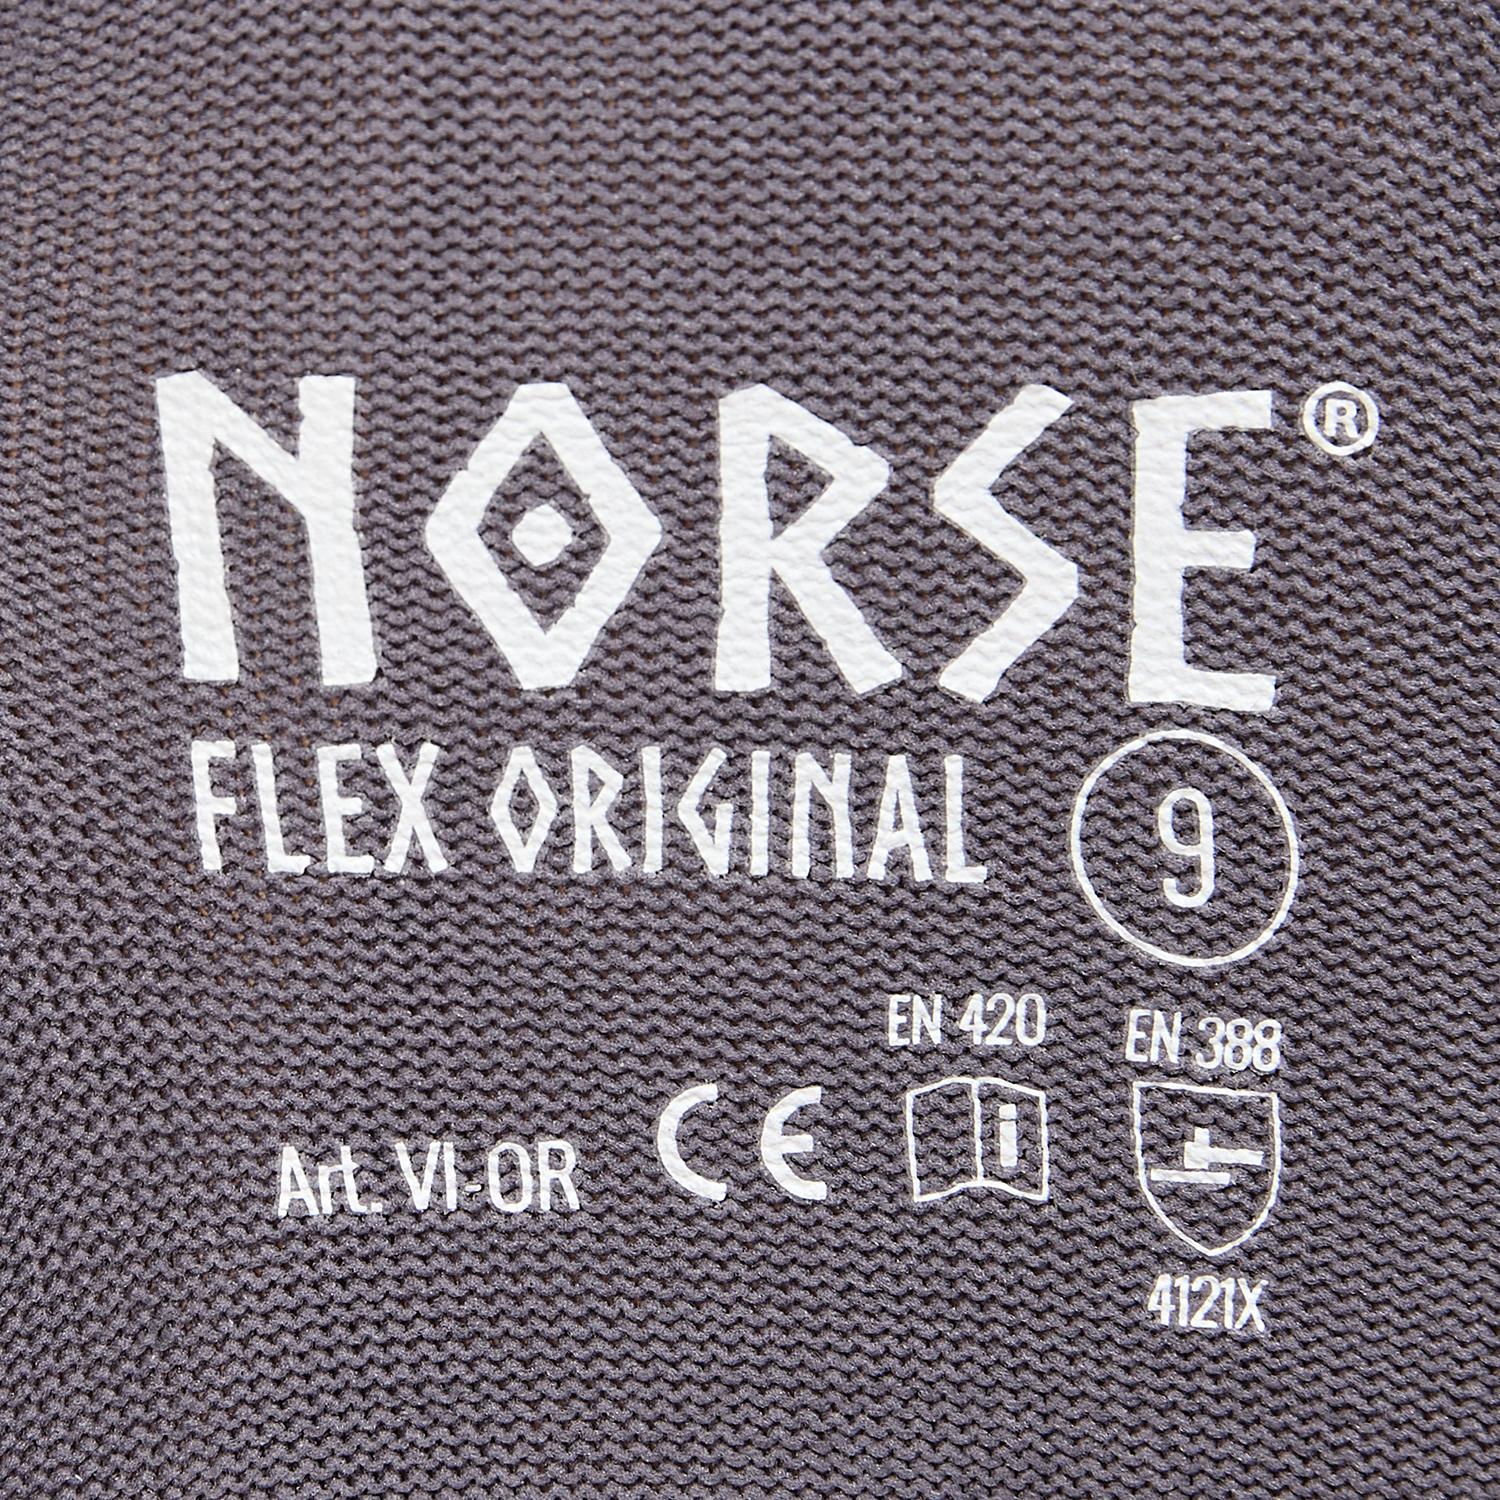 Guantes de montaje NORSE Flex Original talla 9